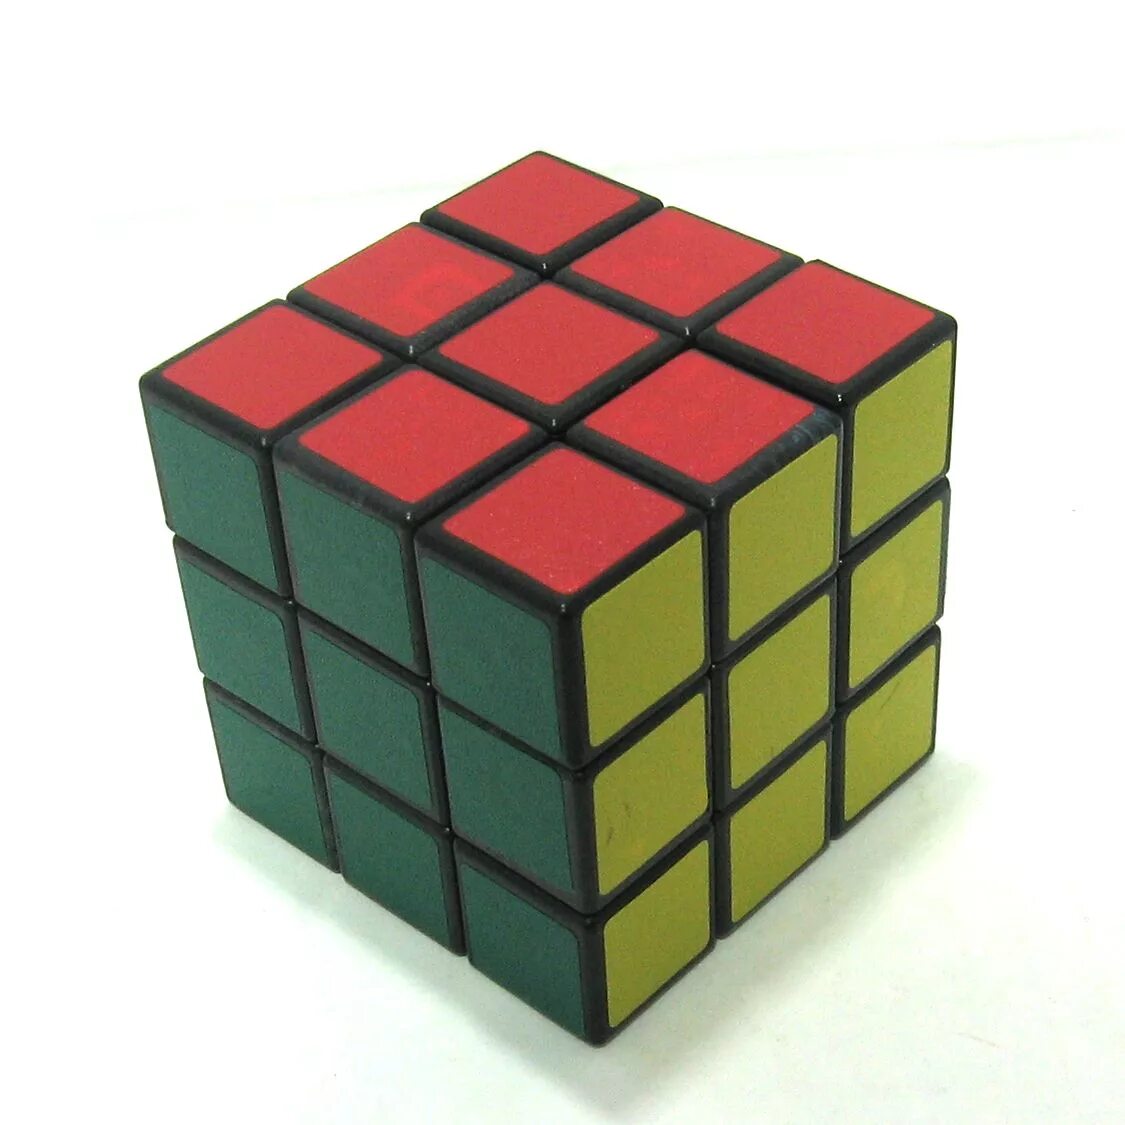 Цвета рубика. Кубик Рубика 3на3 мини 1см. Кубик Рубика 3 на 3. Кубик-Рубика 3х3 цвета сторон. Большой кубик Рубика 3х3 30см.